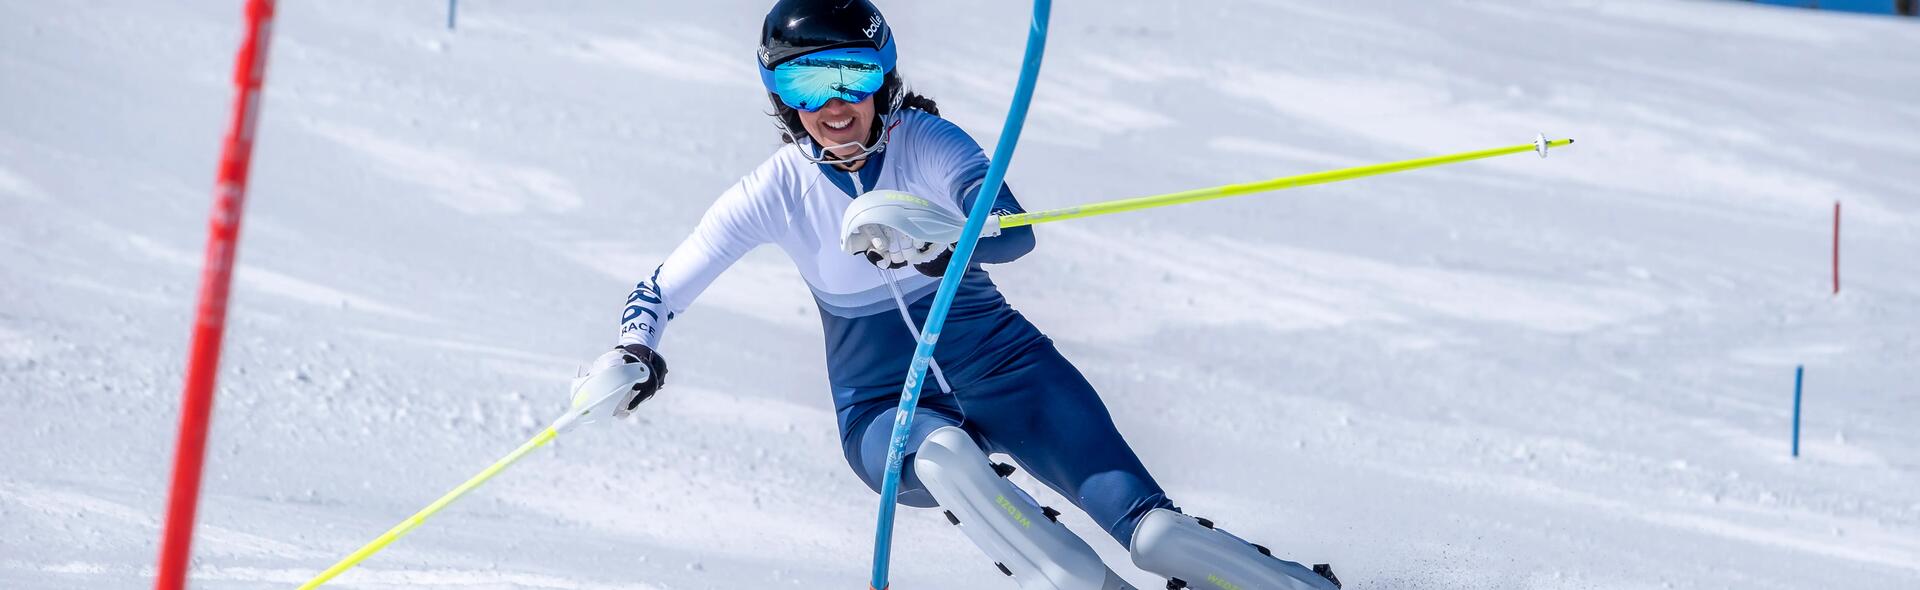 kobieta omijająca tyczki jadąc na nartach